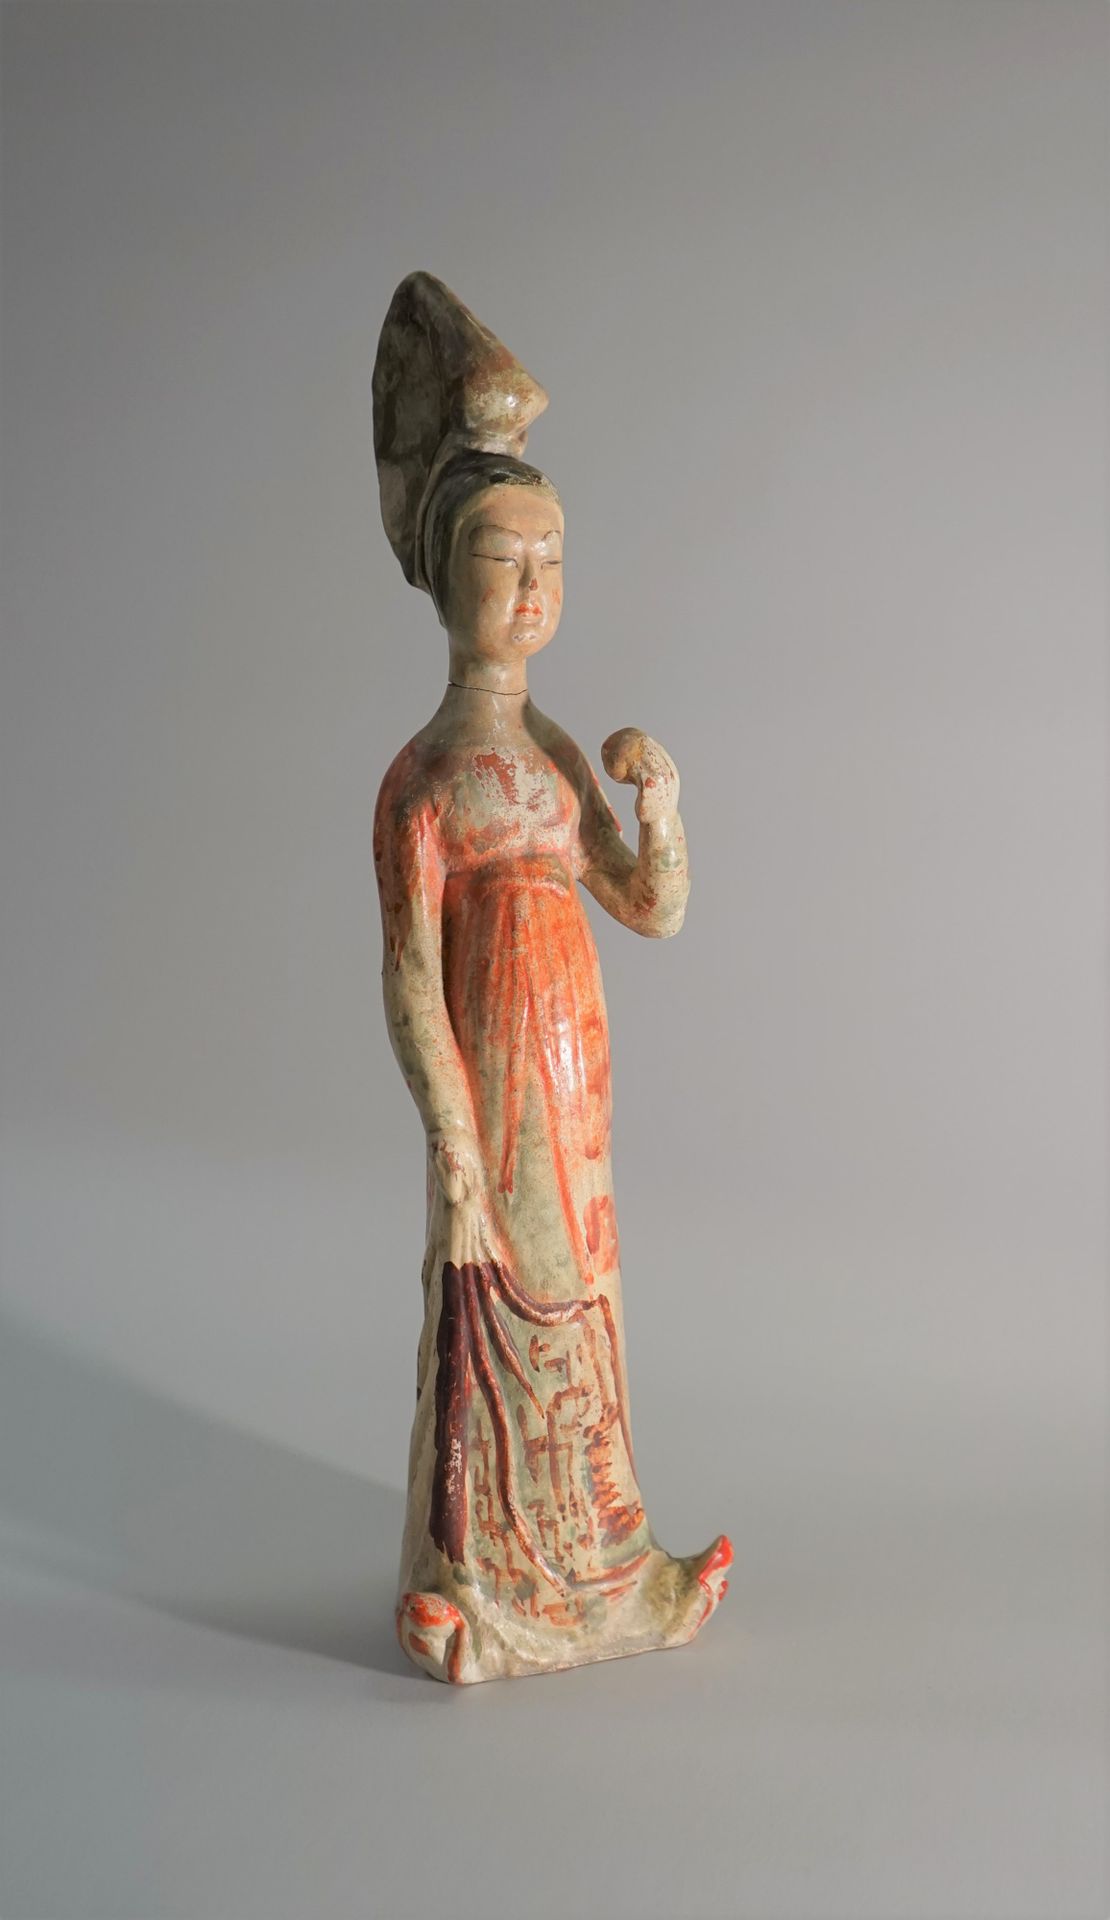 Null 多色陶瓷宫廷女郎。断裂的头部被粘上了。唐代风格。

34.5厘米